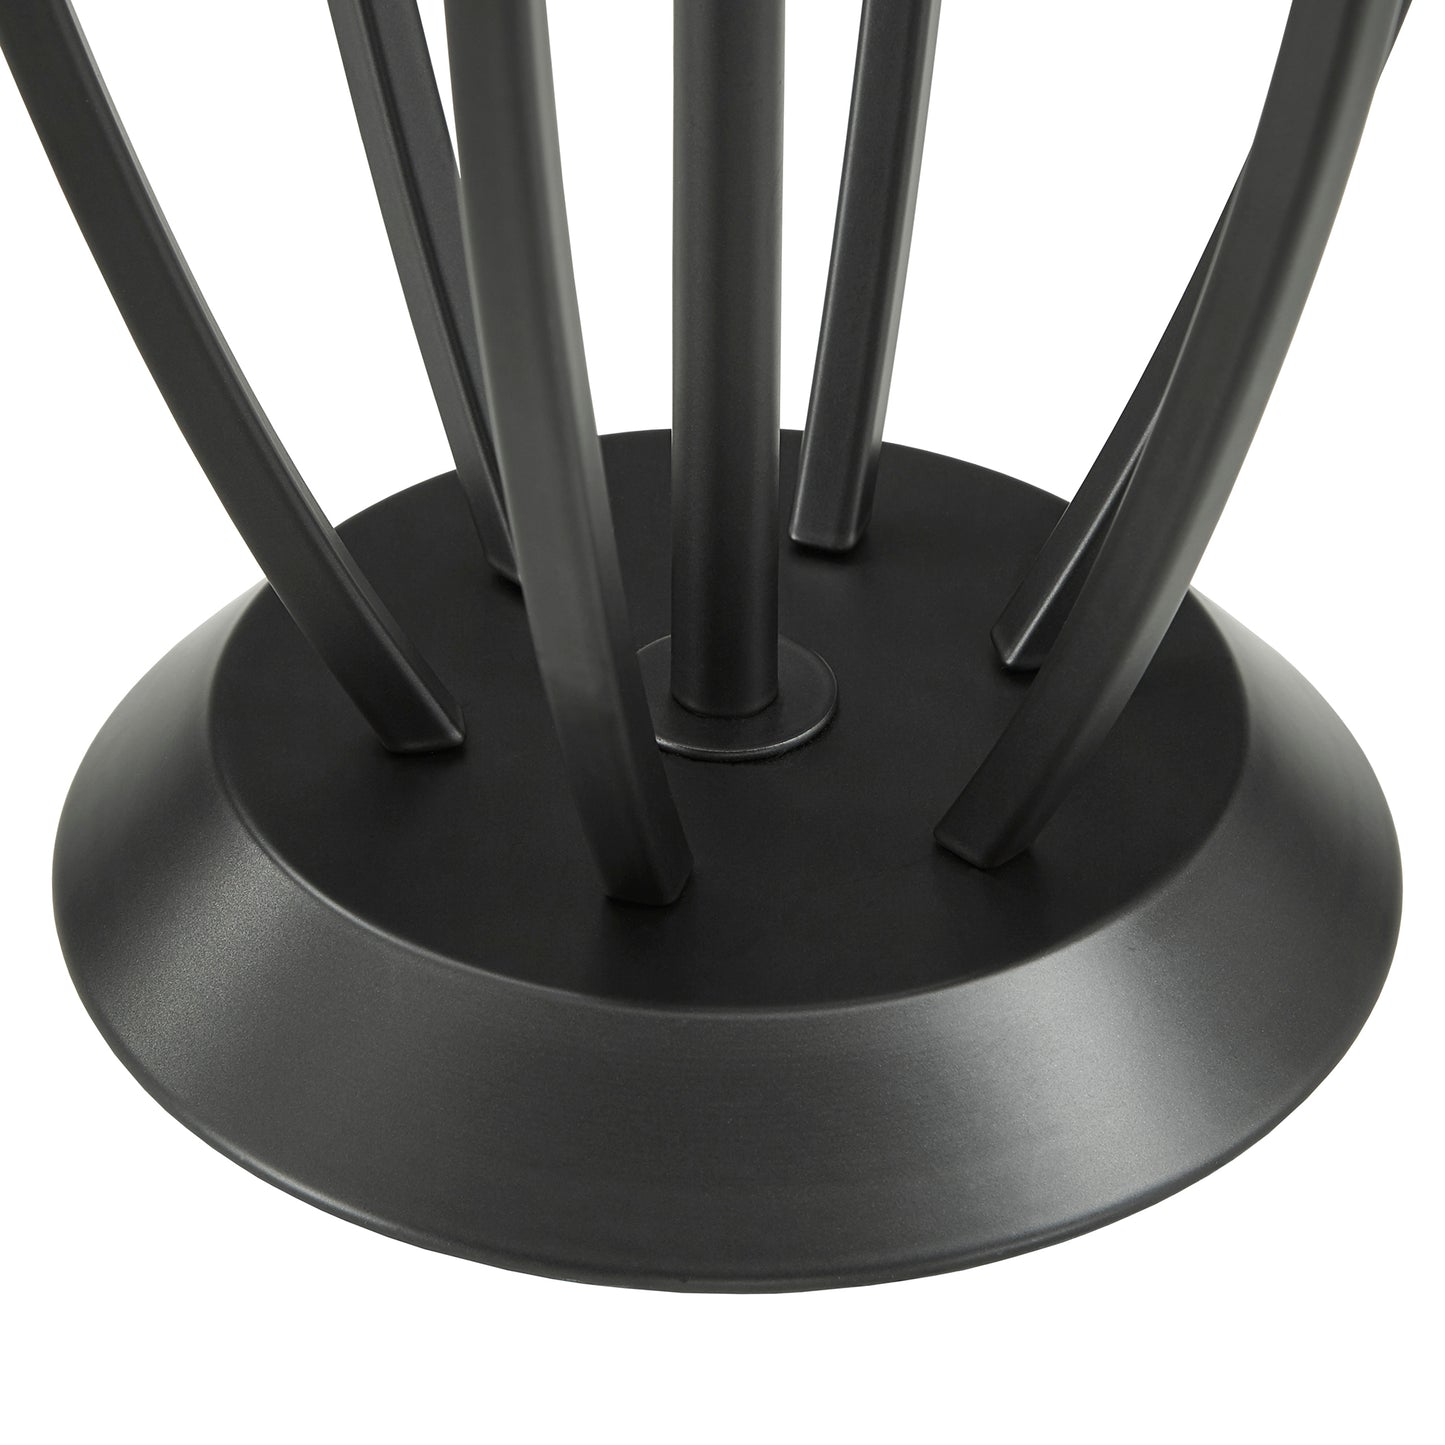 Matte Black Finish Modern 1-light Table Lamp